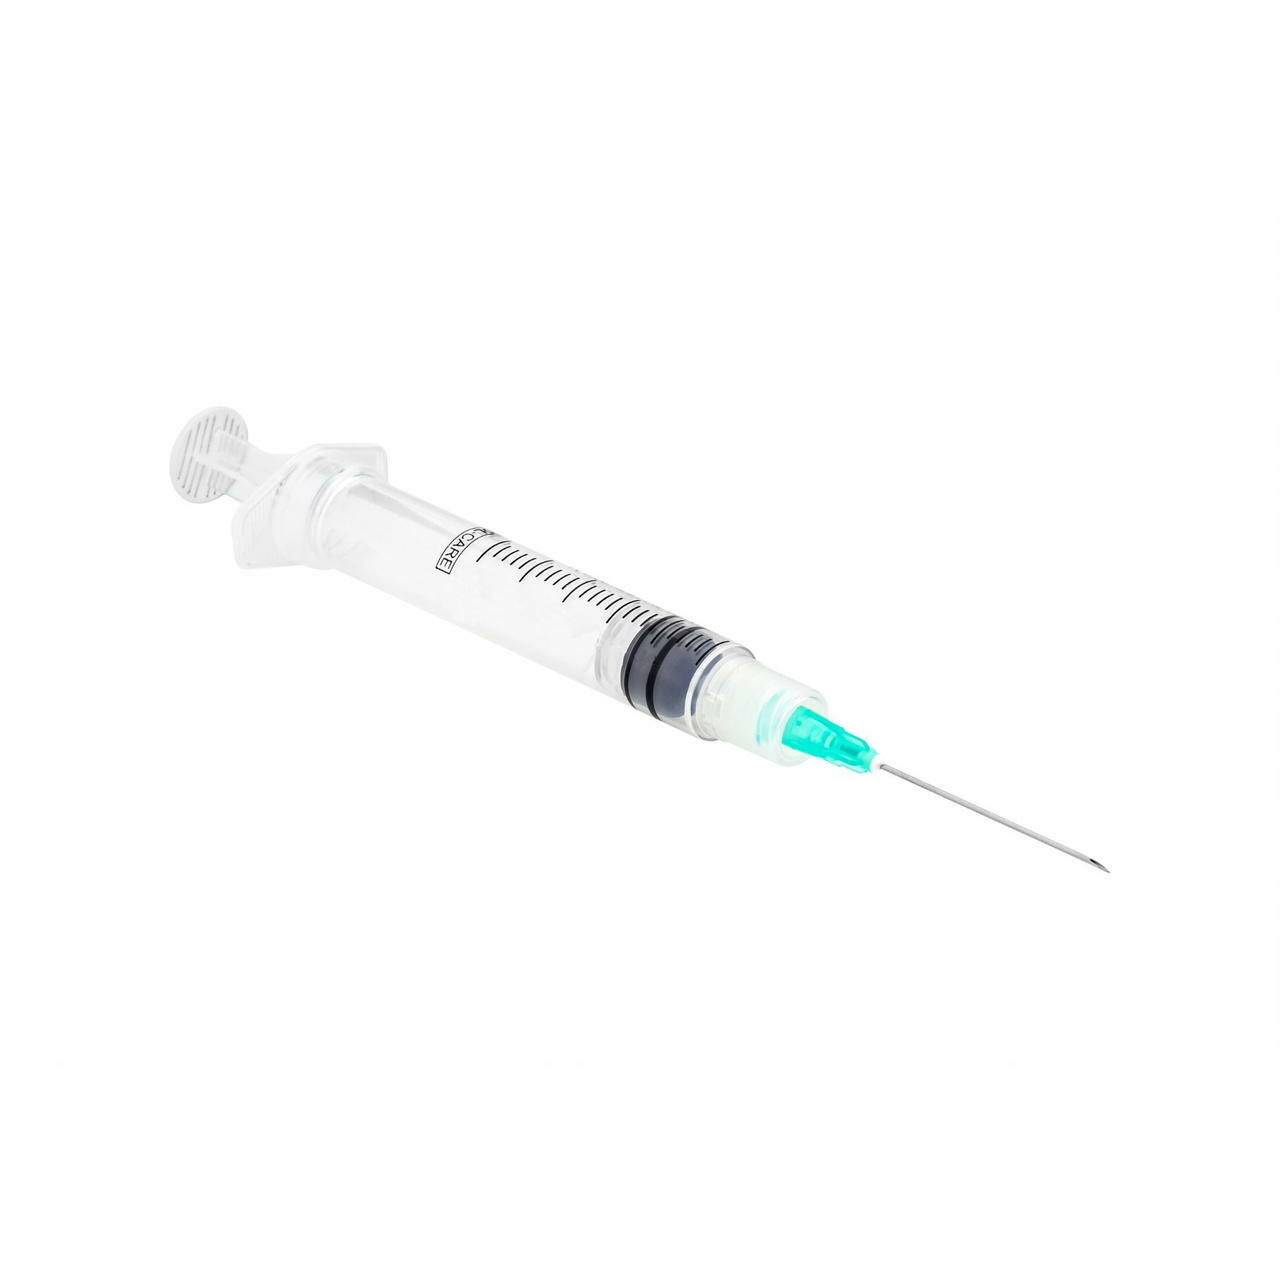 3ml 23g 1 inch Sol-Care Luer Lock Safety Syringe and Needle - UKMEDI